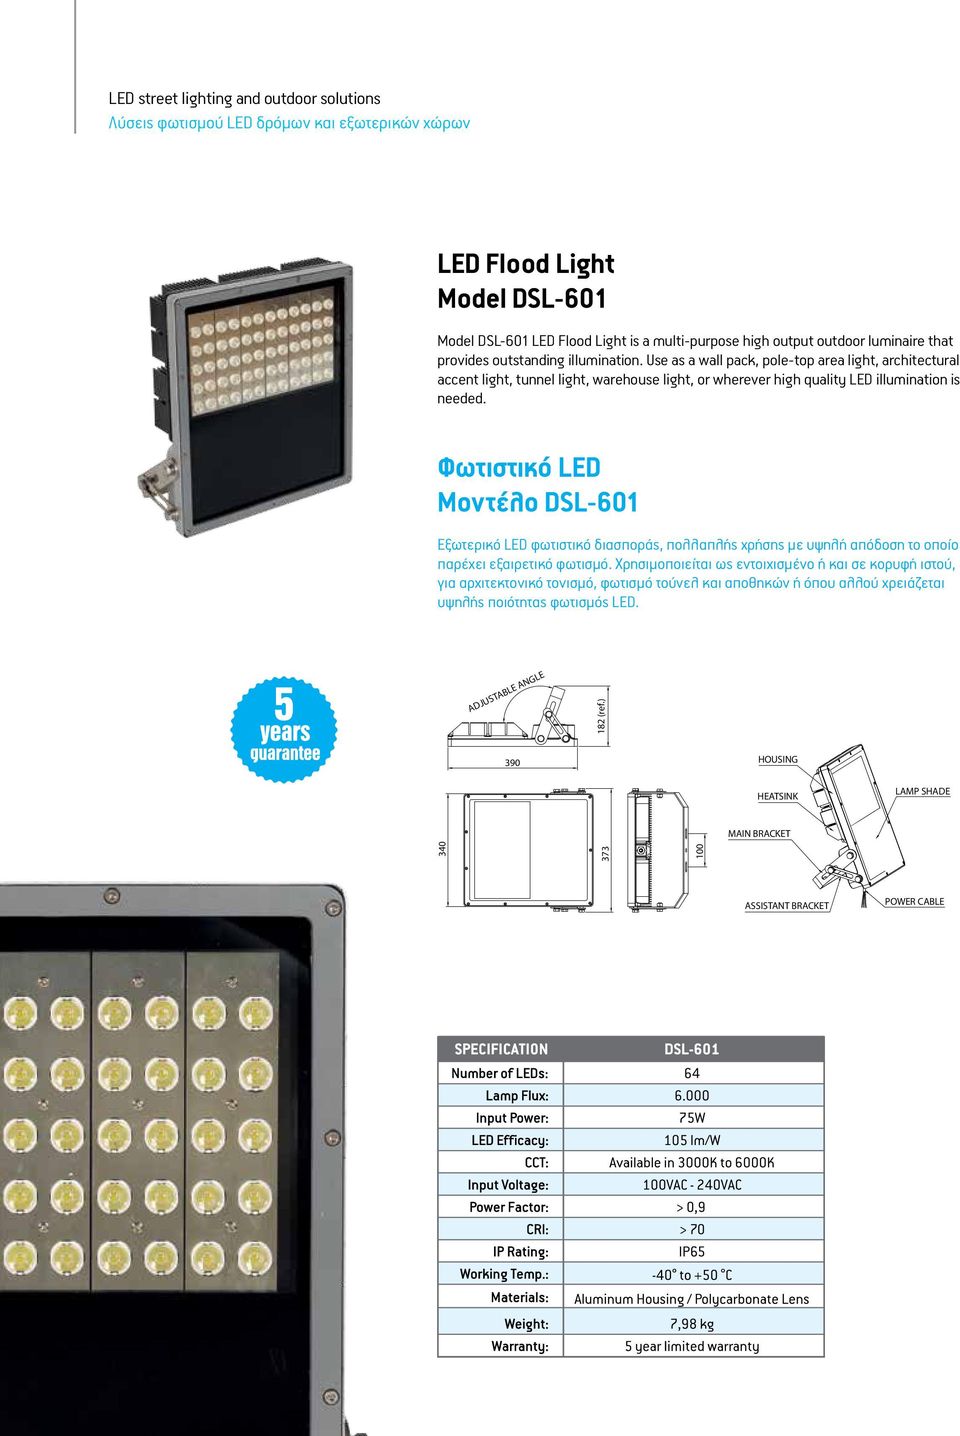 Φωτιστικό LED Μοντέλο DSL-601 Εξωτερικό LED φωτιστικό διασποράς, πολλαπλής χρήσης με υψηλή απόδοση το οποίο παρέχει εξαιρετικό φωτισμό.